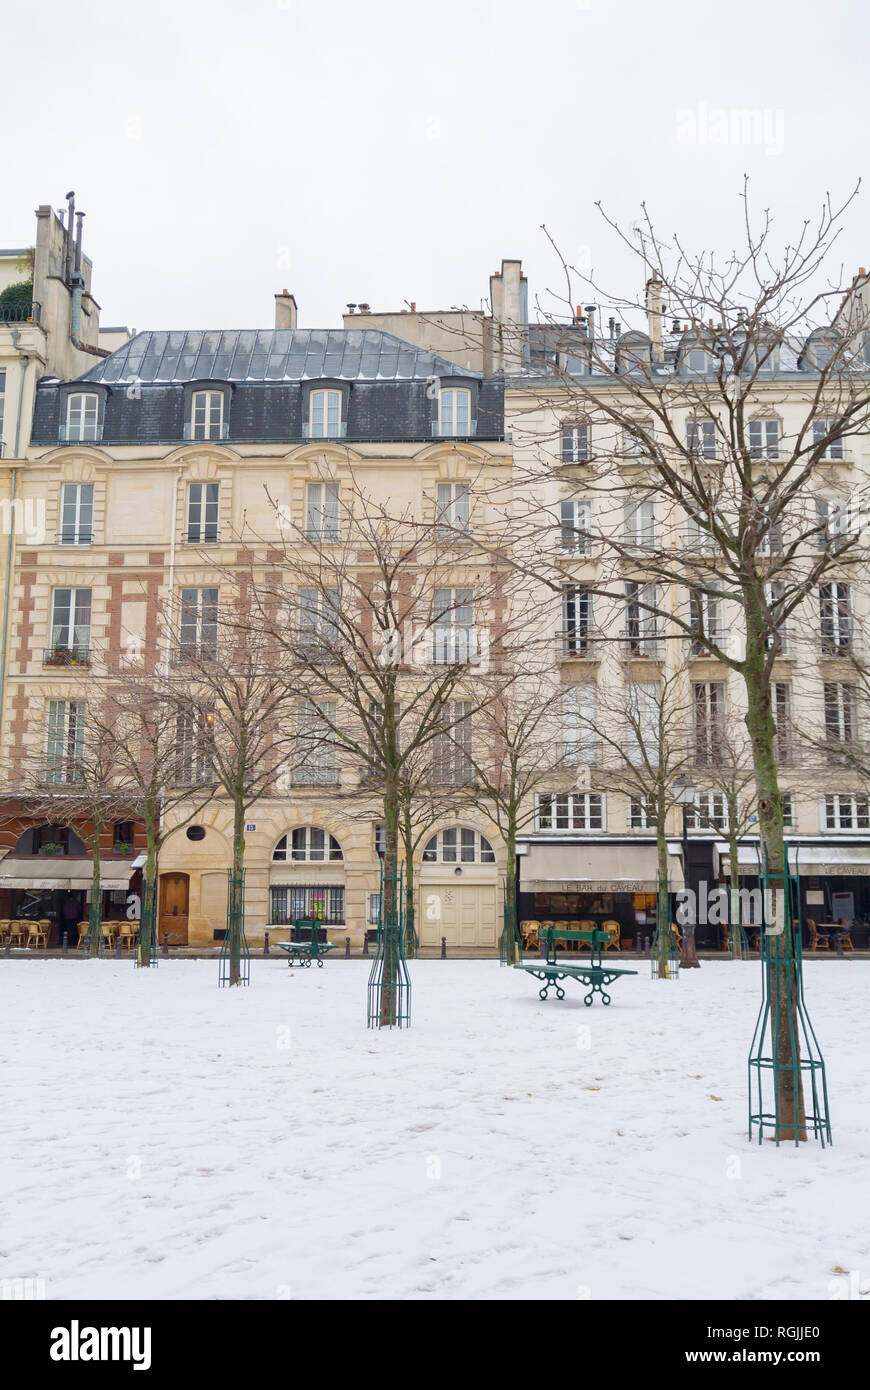 Place d'Auphine under snow, paris, france Stock Photo